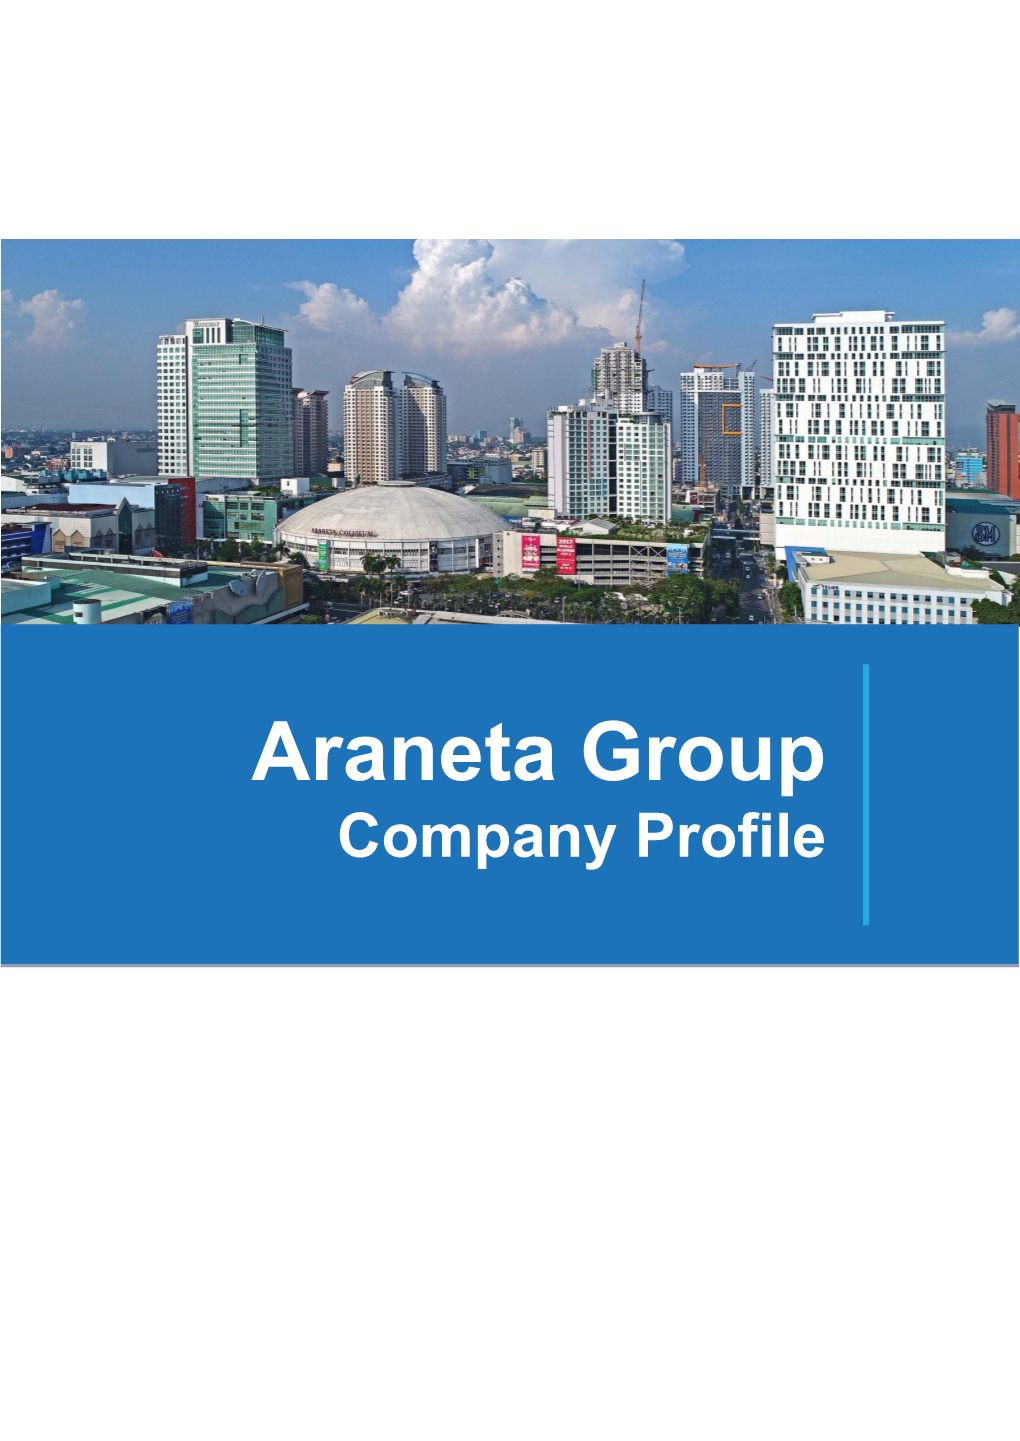 The Araneta Group the Araneta Center